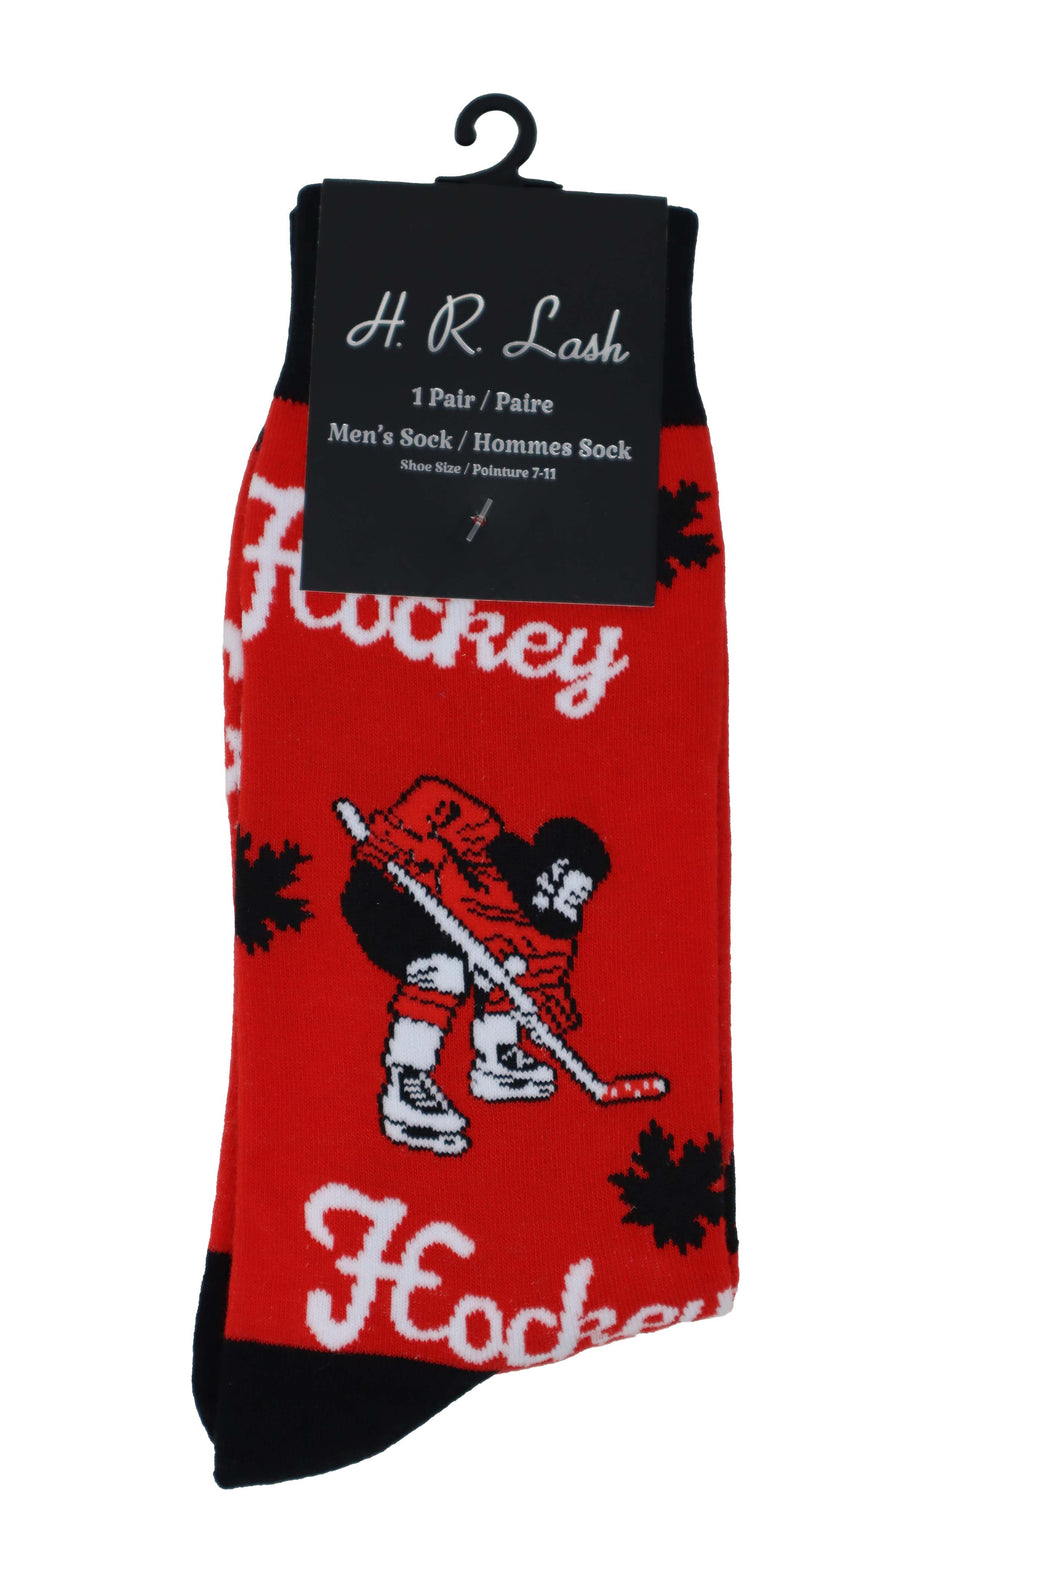 H. R. Lash | FS191 | Fun Socks | Red Hockey